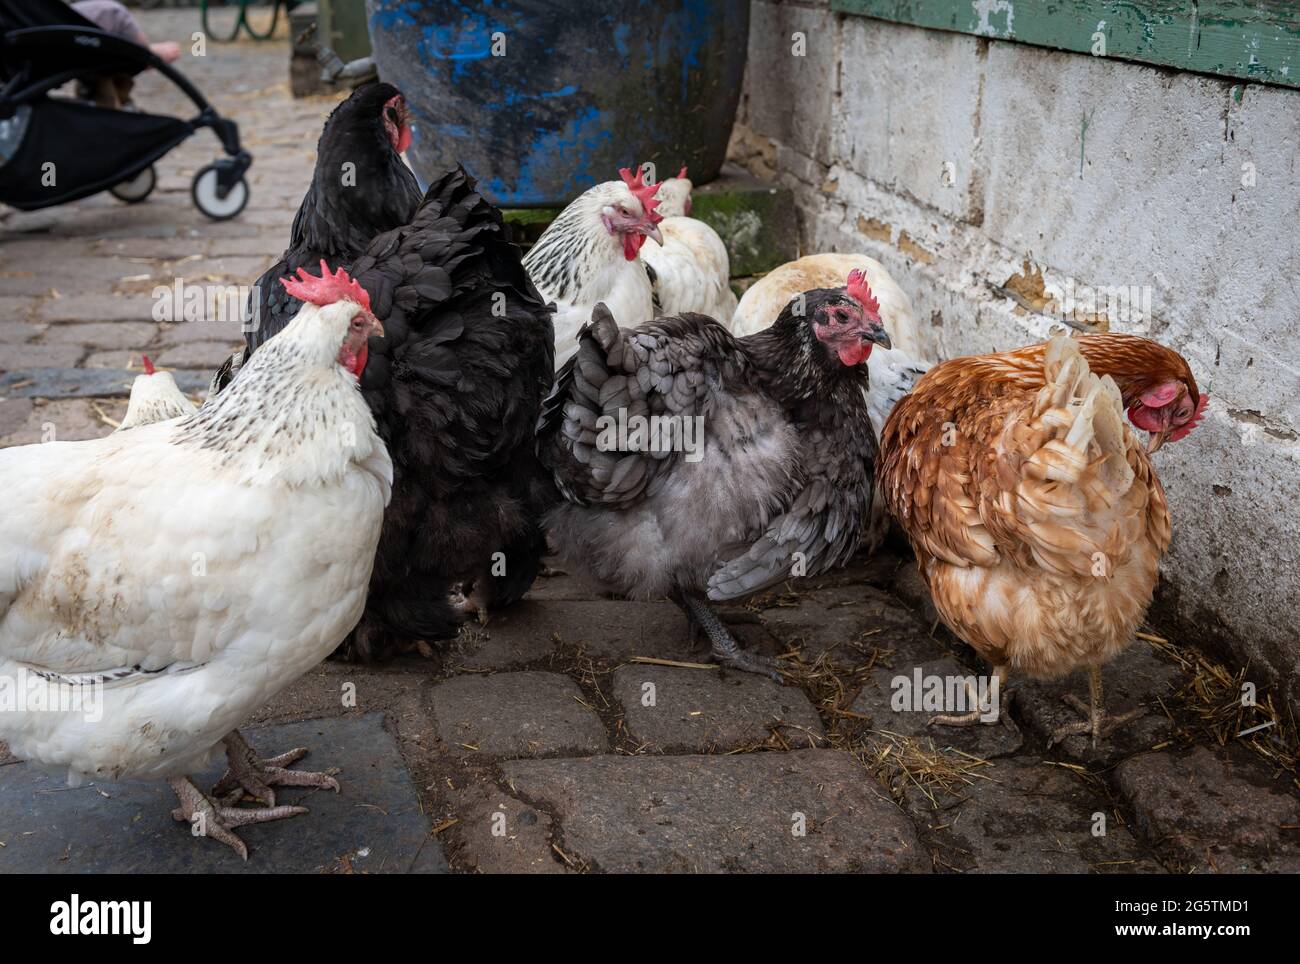 Les poules Freerange se déplacent librement dans une ferme. Banque D'Images